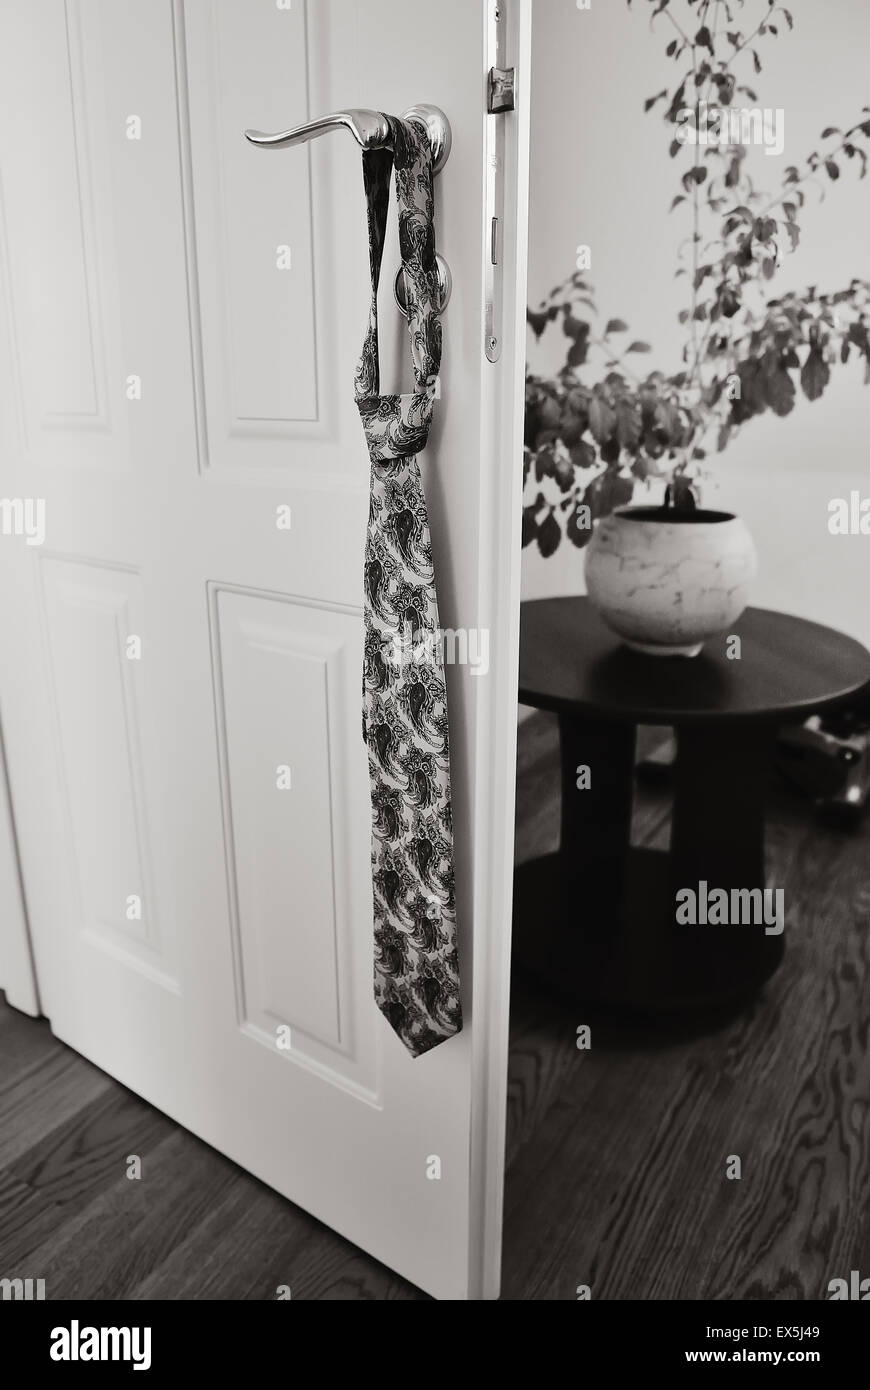 La cravate de l'homme accroché à la poignée de la porte Photo Stock - Alamy